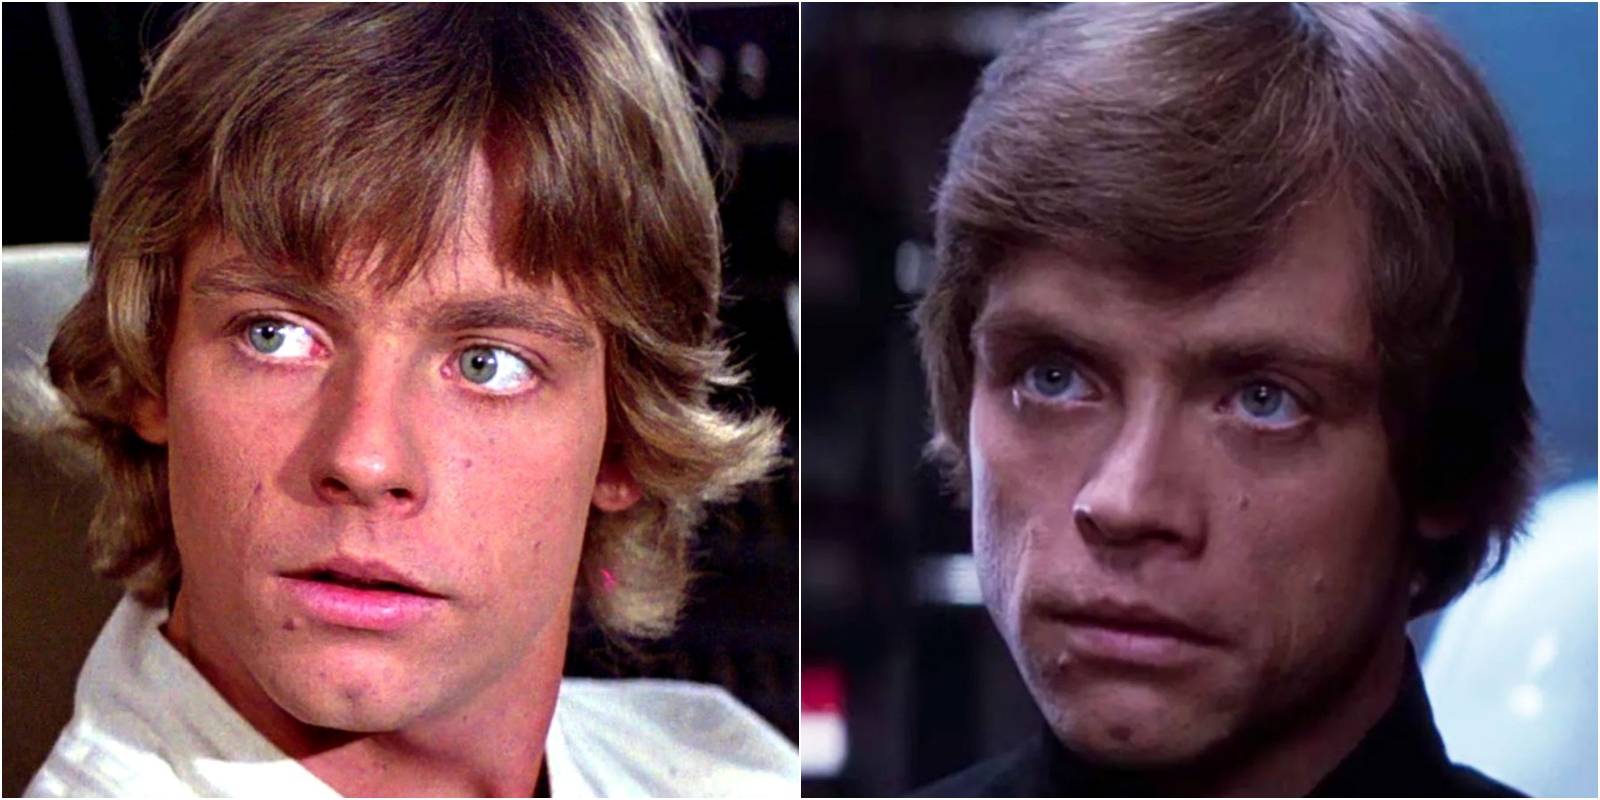 Luke skywalker scar